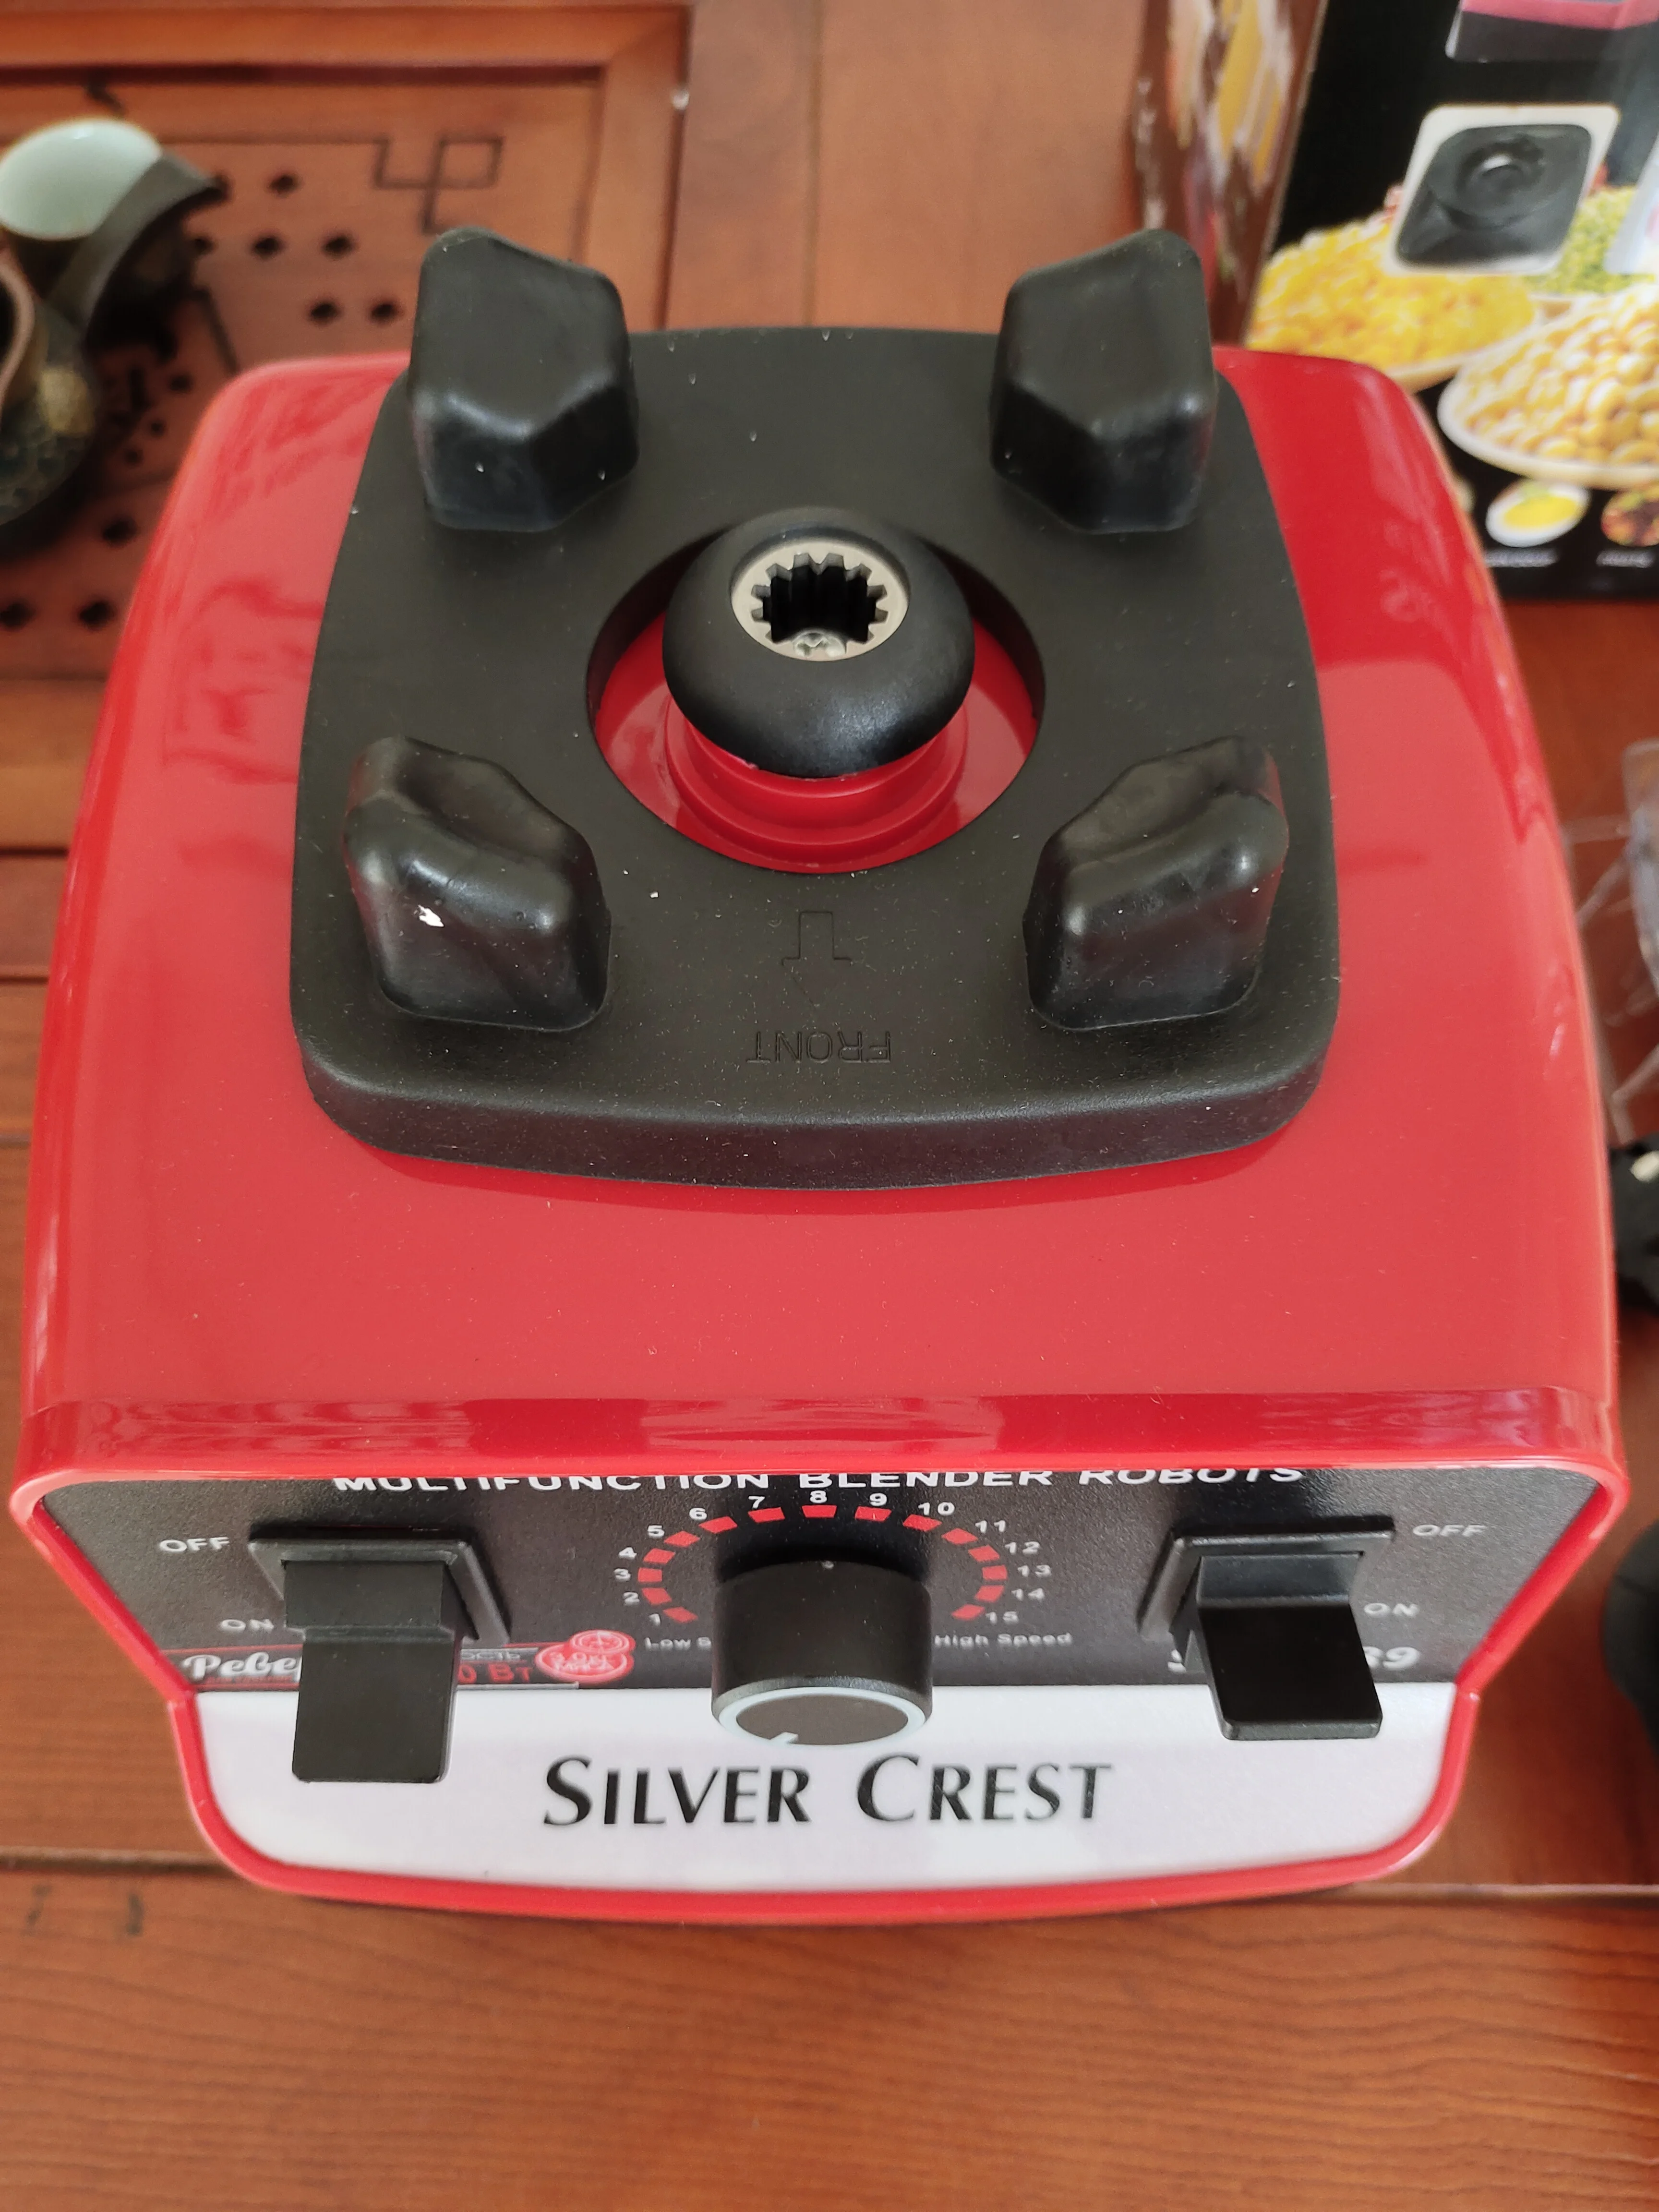 Robot mixeur Silver crest 1200 W model SC-159